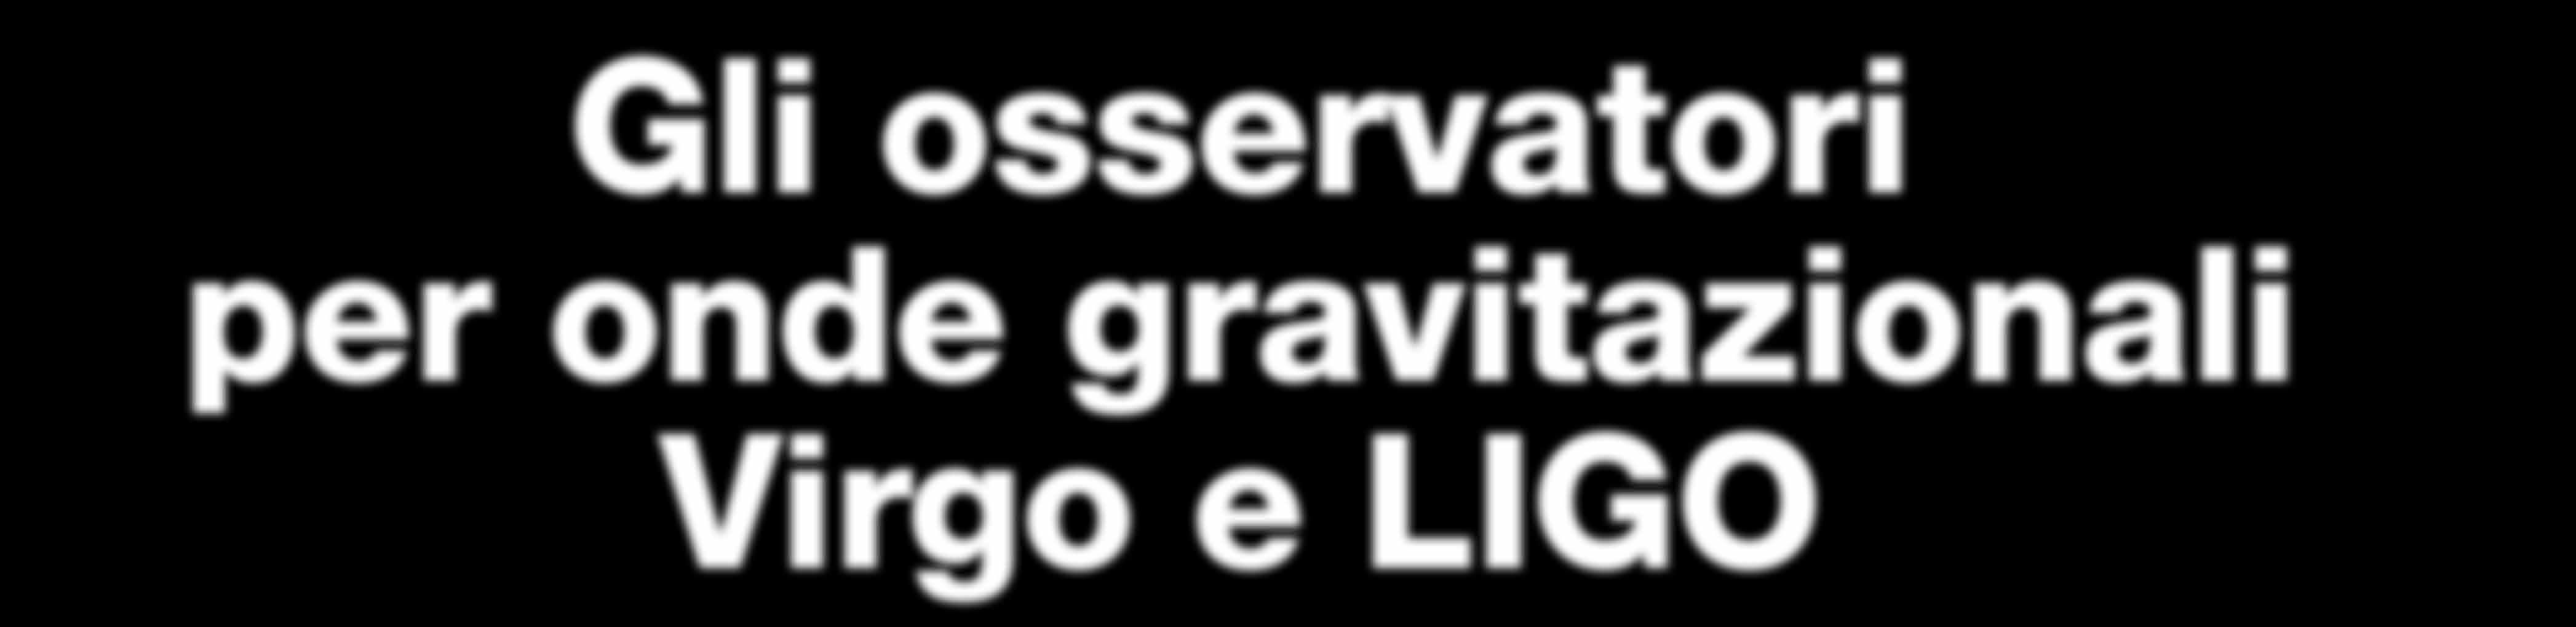 Gli osservatori per onde gravitazionali Virgo e LIGO Gli strumenti più avanzati per l osservazione di onde gravitazionali sono gli interferometri Virgo a Cascina, nei pressi di Pisa, e